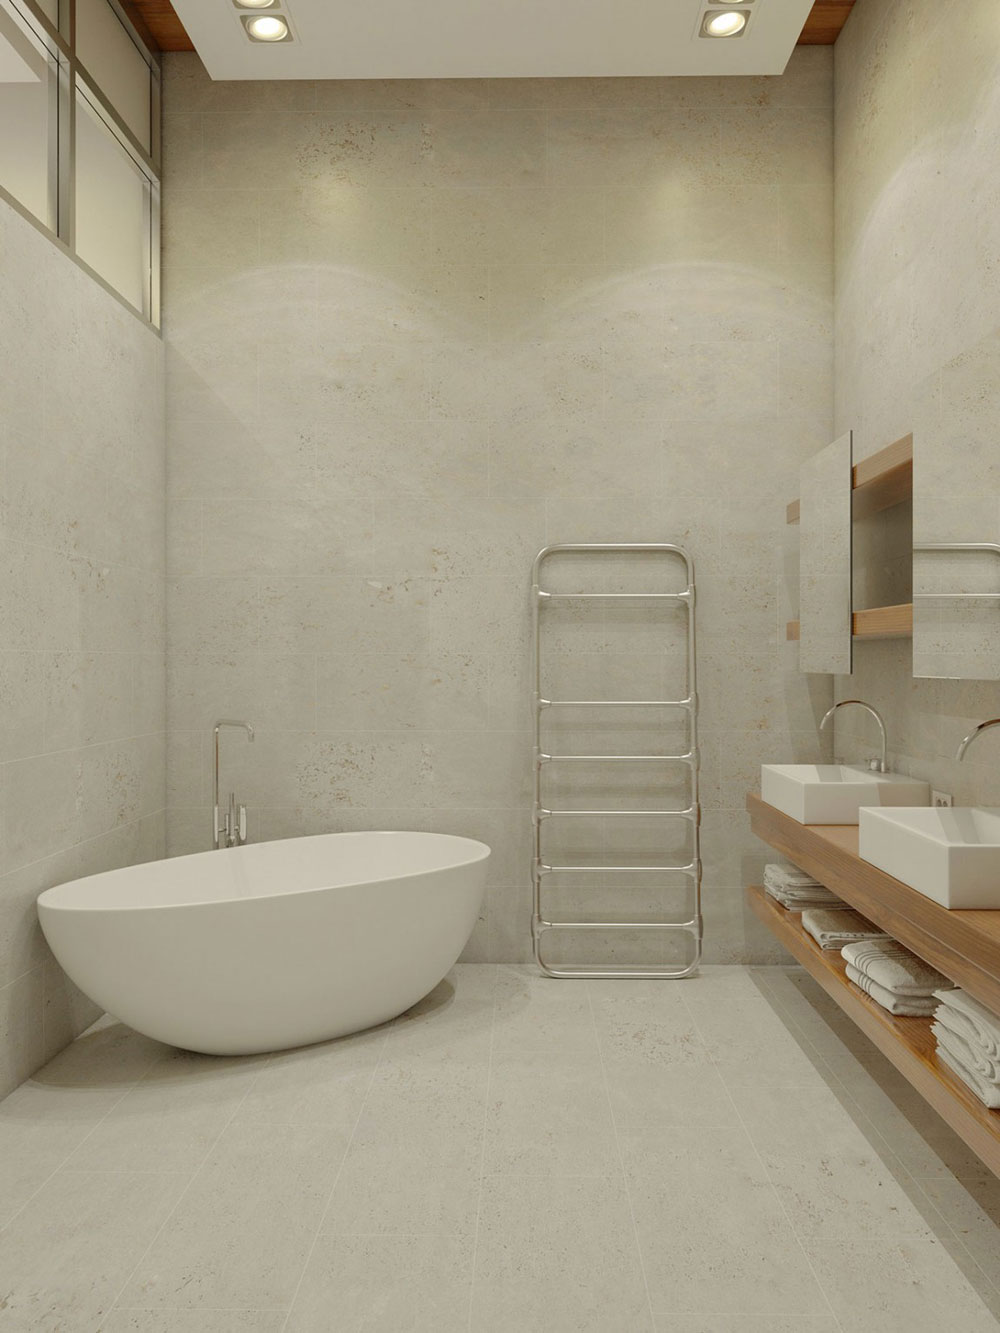 Letar du efter inspiration för modern badrumsinredning 5 Letar du efter inspiration för modern badrumsinredning?